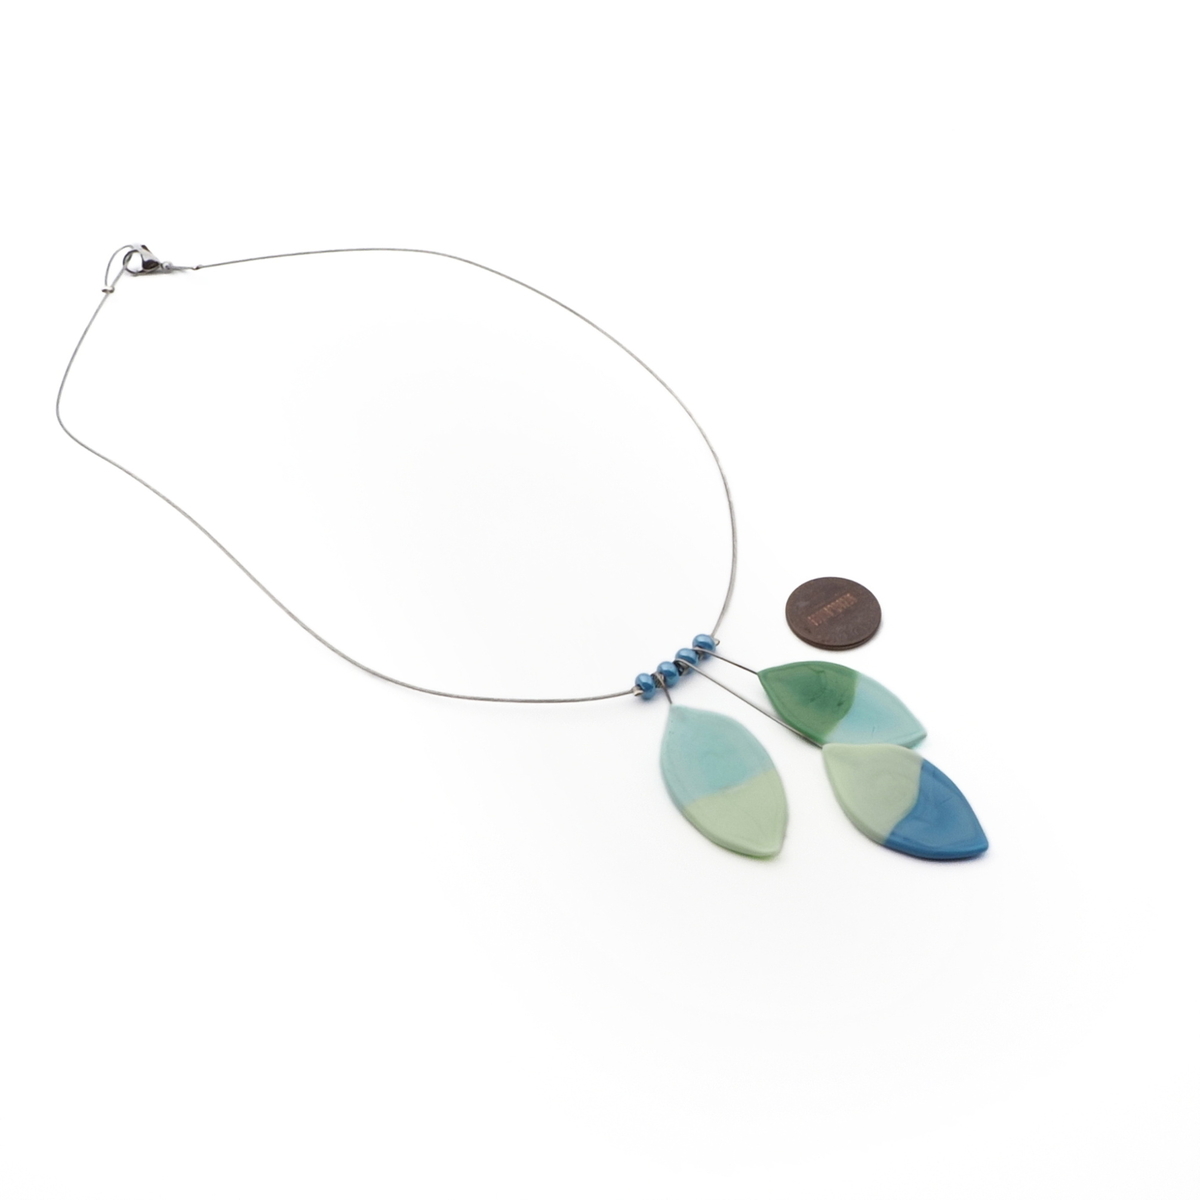 Czech lampwork bicolor uranium leaf glass bead necklace